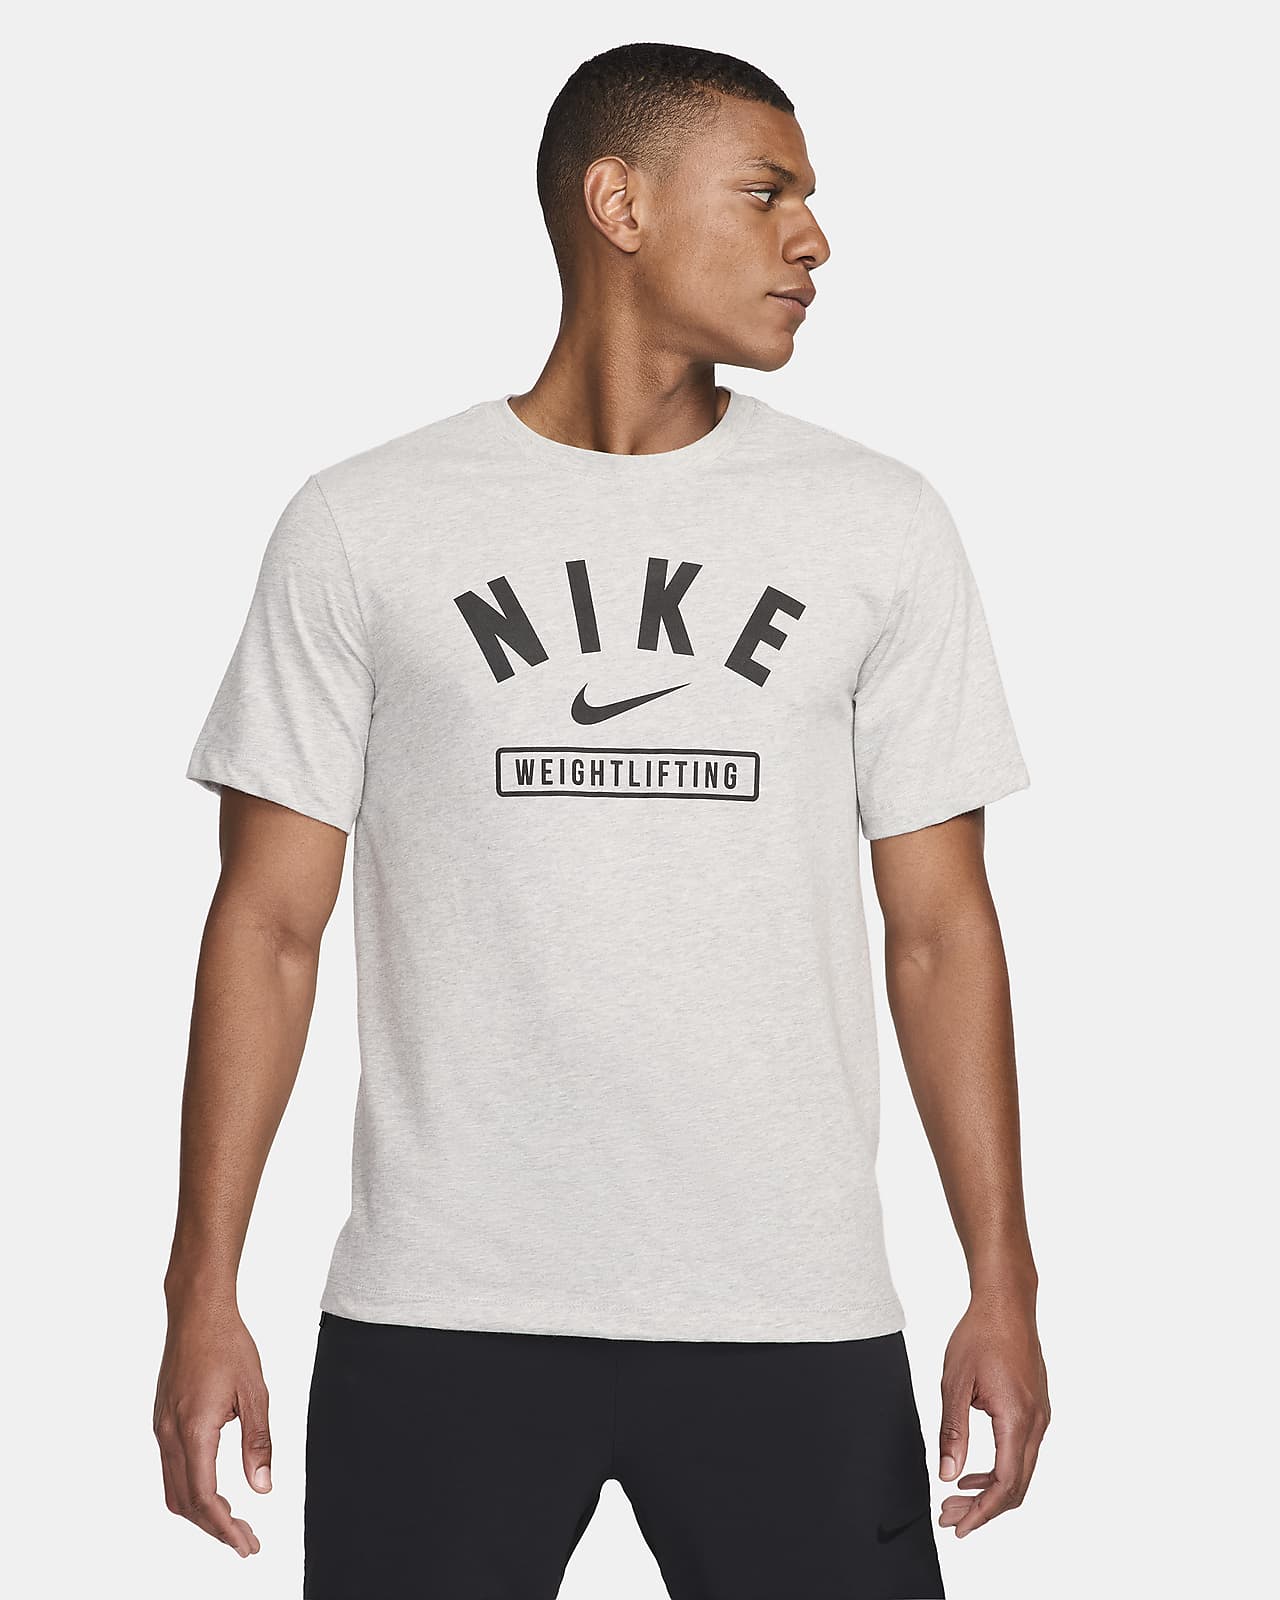 Nike Men's Weightlifting T-Shirt